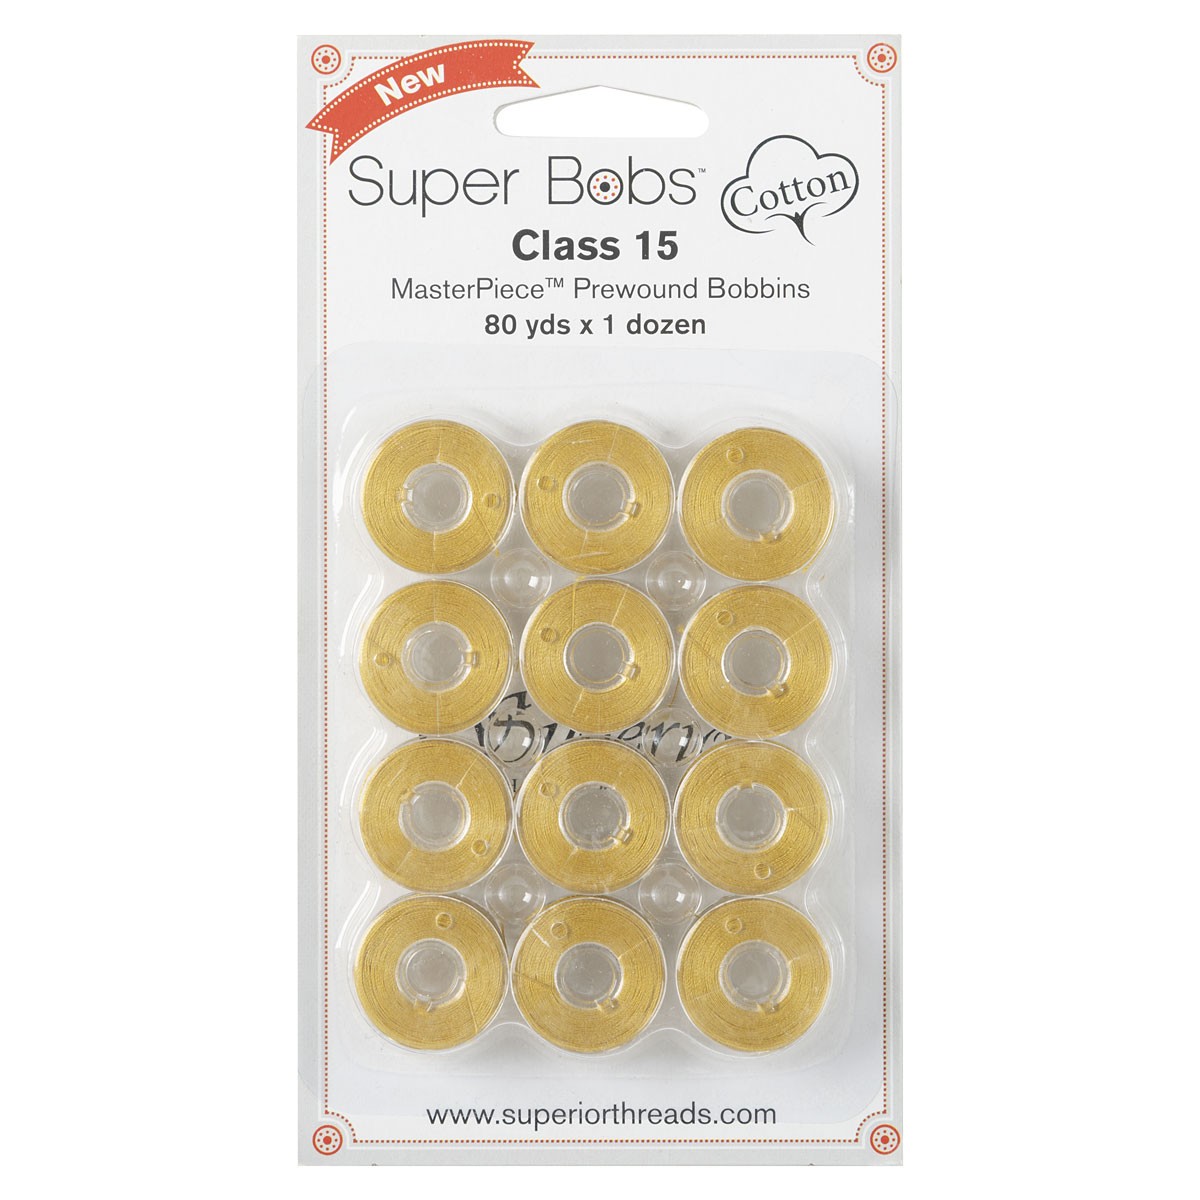 Super Bobs Cotton Class 15 Bobbin - Botticelli by Superior Threads